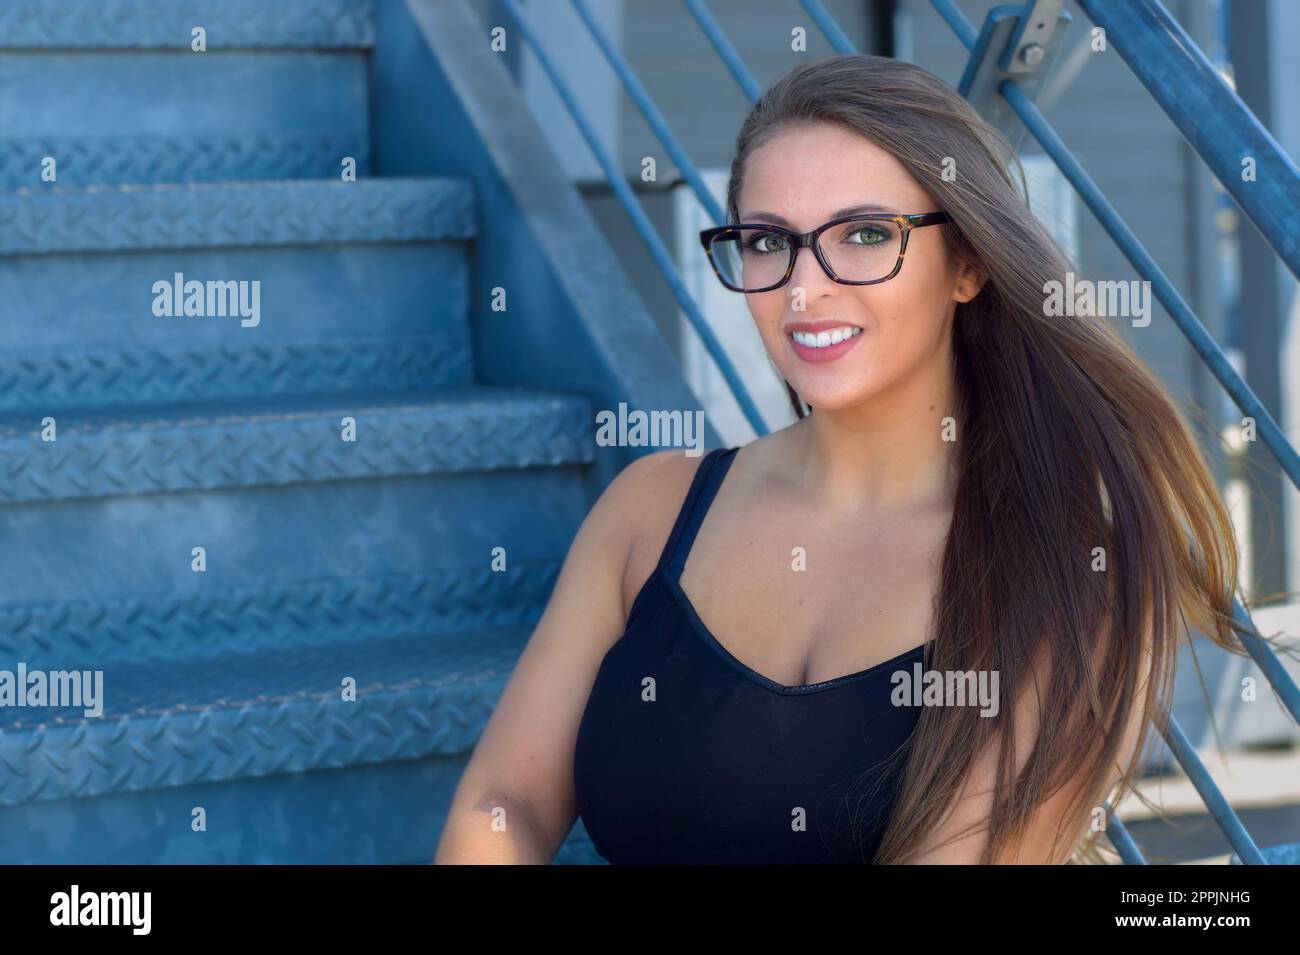 Junge Frau, die auf einer Metalltreppe vor dem Lifestyle-Lächeln sitzt und Student 20s ist Stockfoto